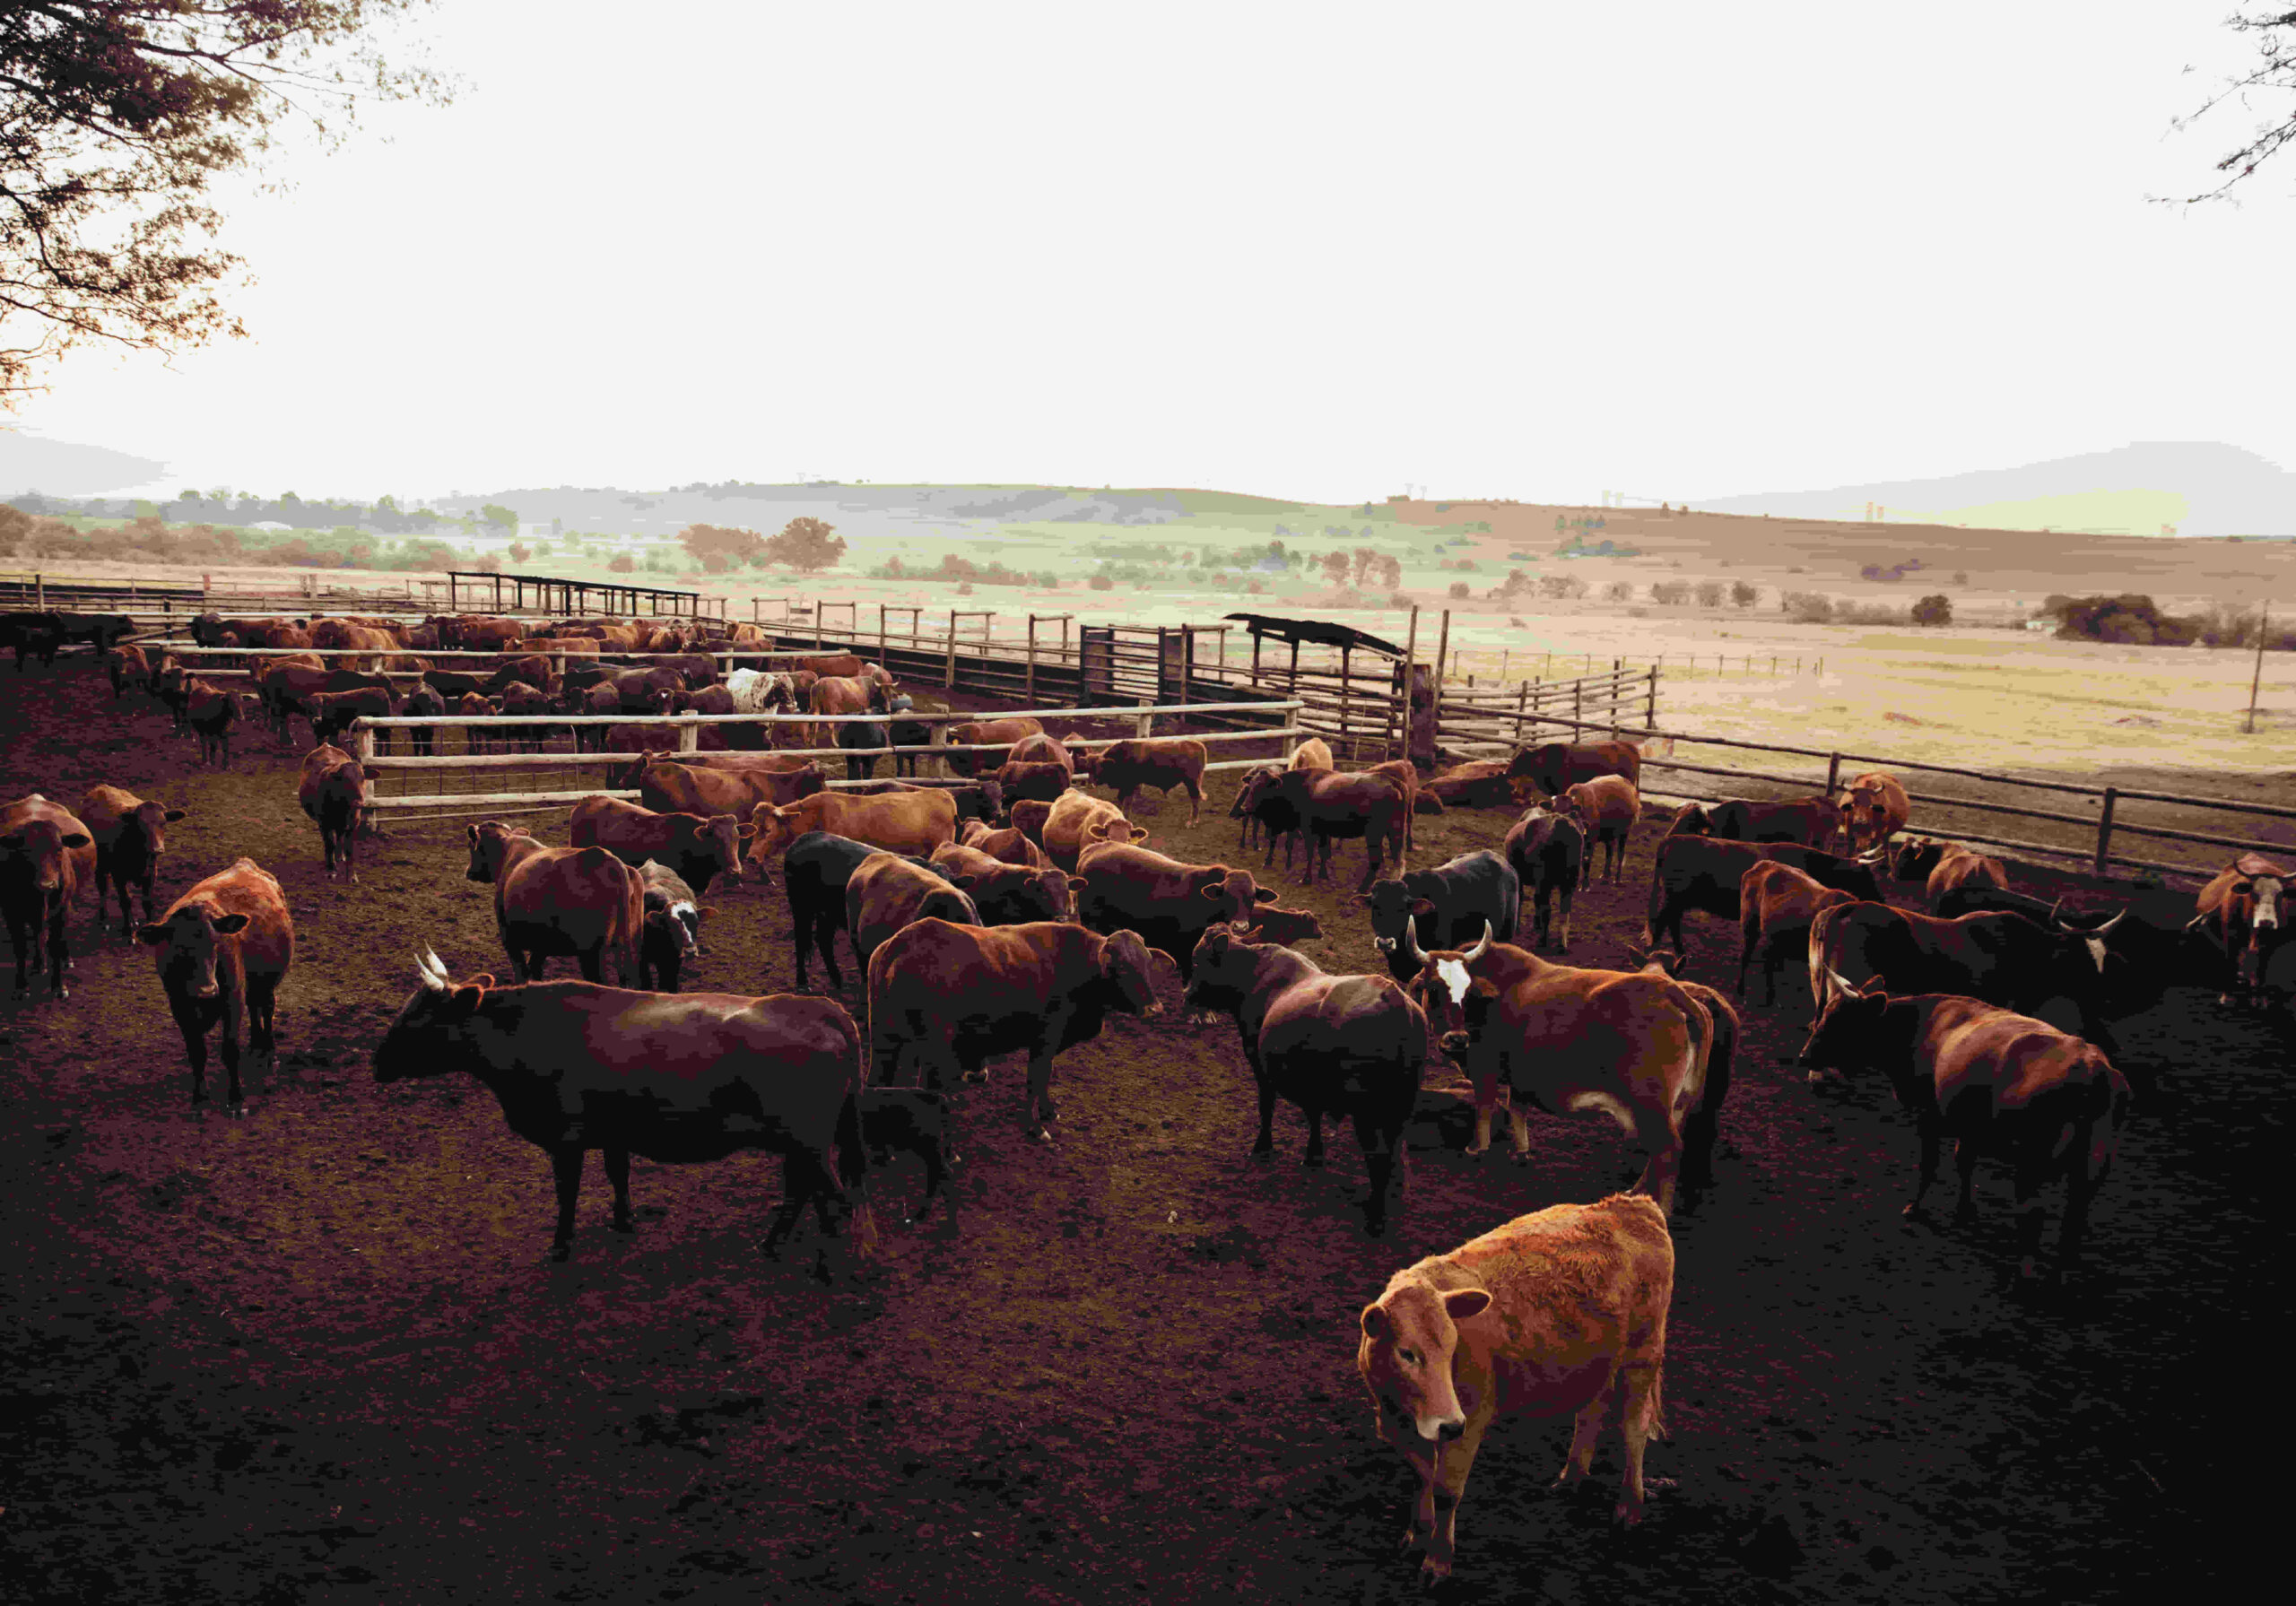 ganado bovino con parásitos o bacterias que afectan al intesto y los pulmones lo que por consecuencia dan menor rentabilidad de dinero para productos ganadero